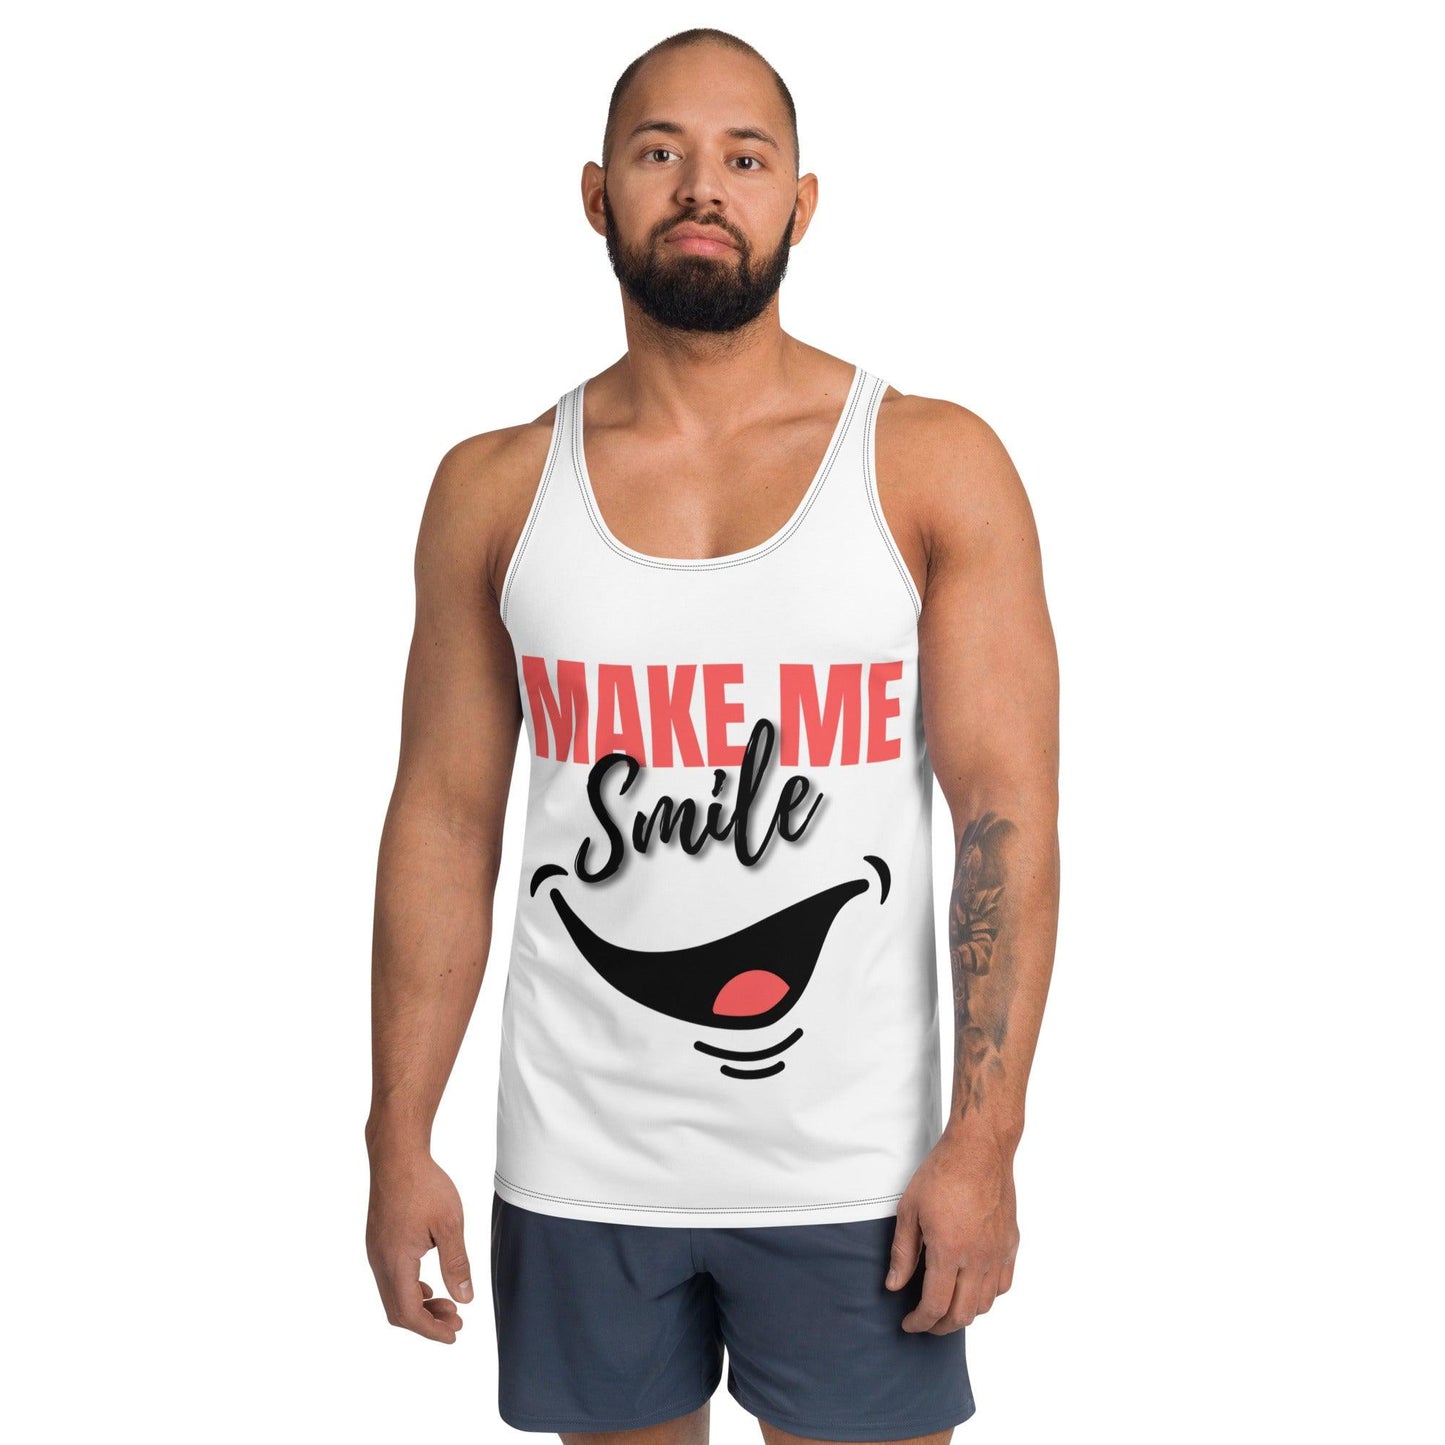 Camiseta de tirantes "Make me Smile" - TopShopperSpot